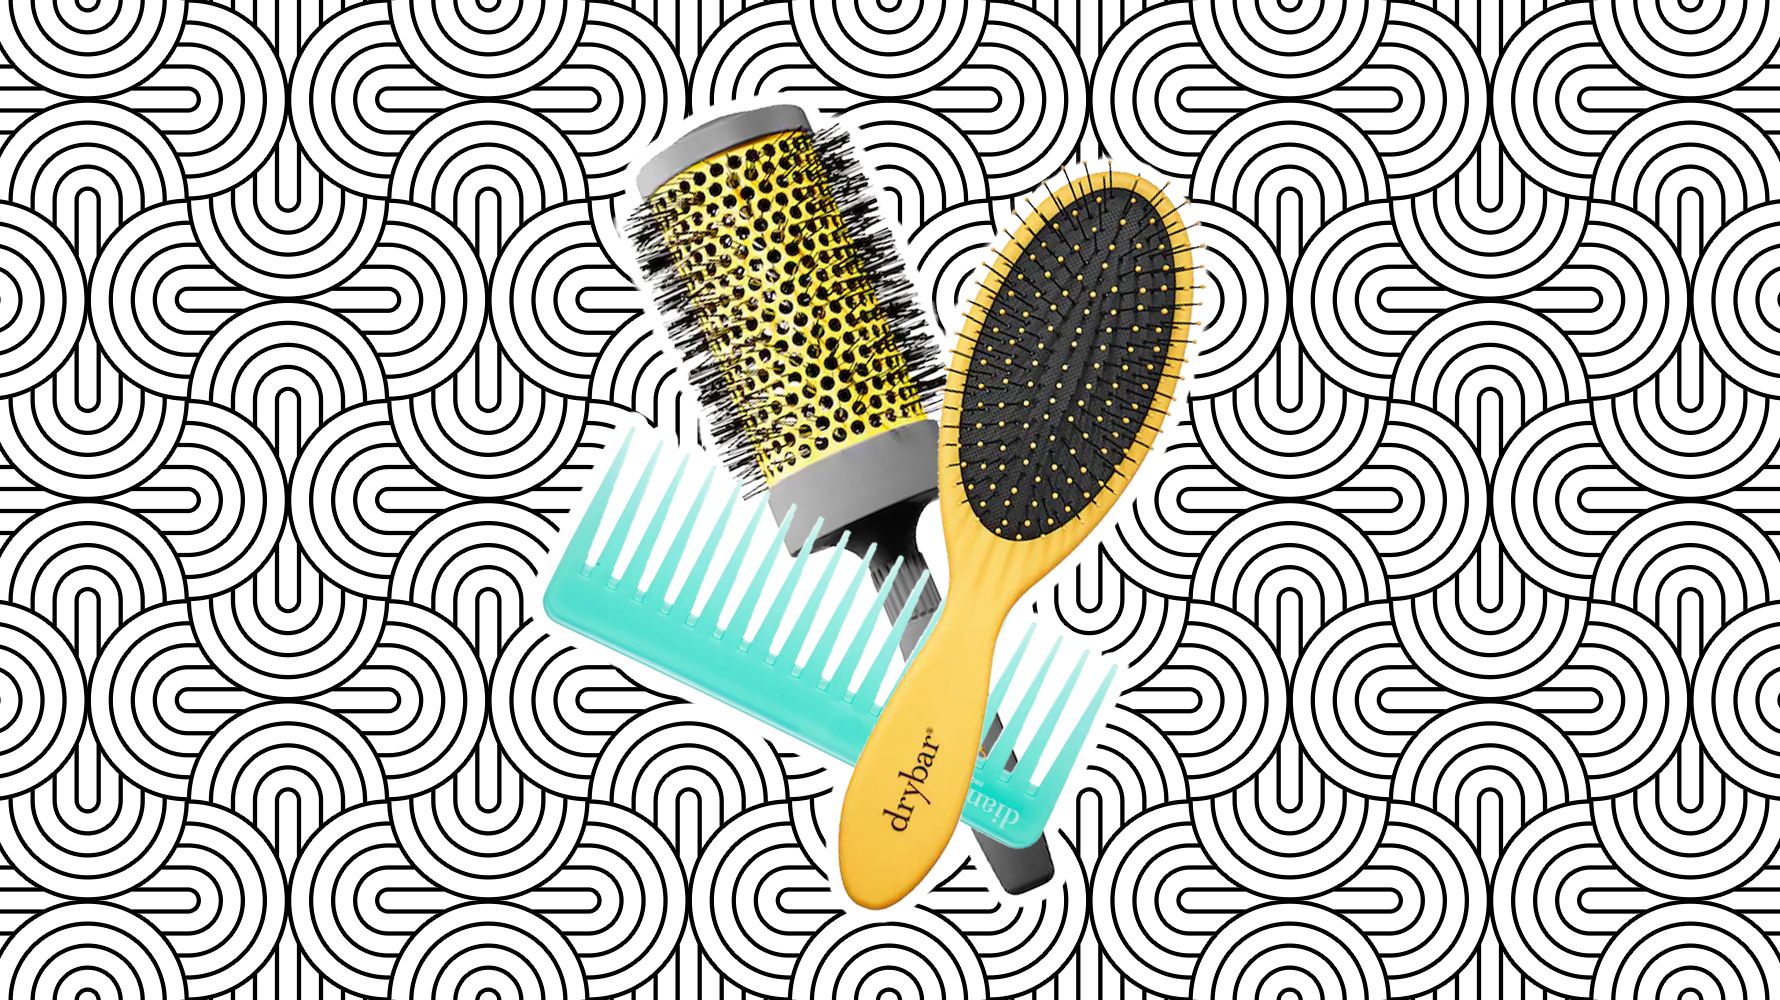 Drybar Lil Lemon Drop Mini Detangling Hair Brush - Ulta Beauty